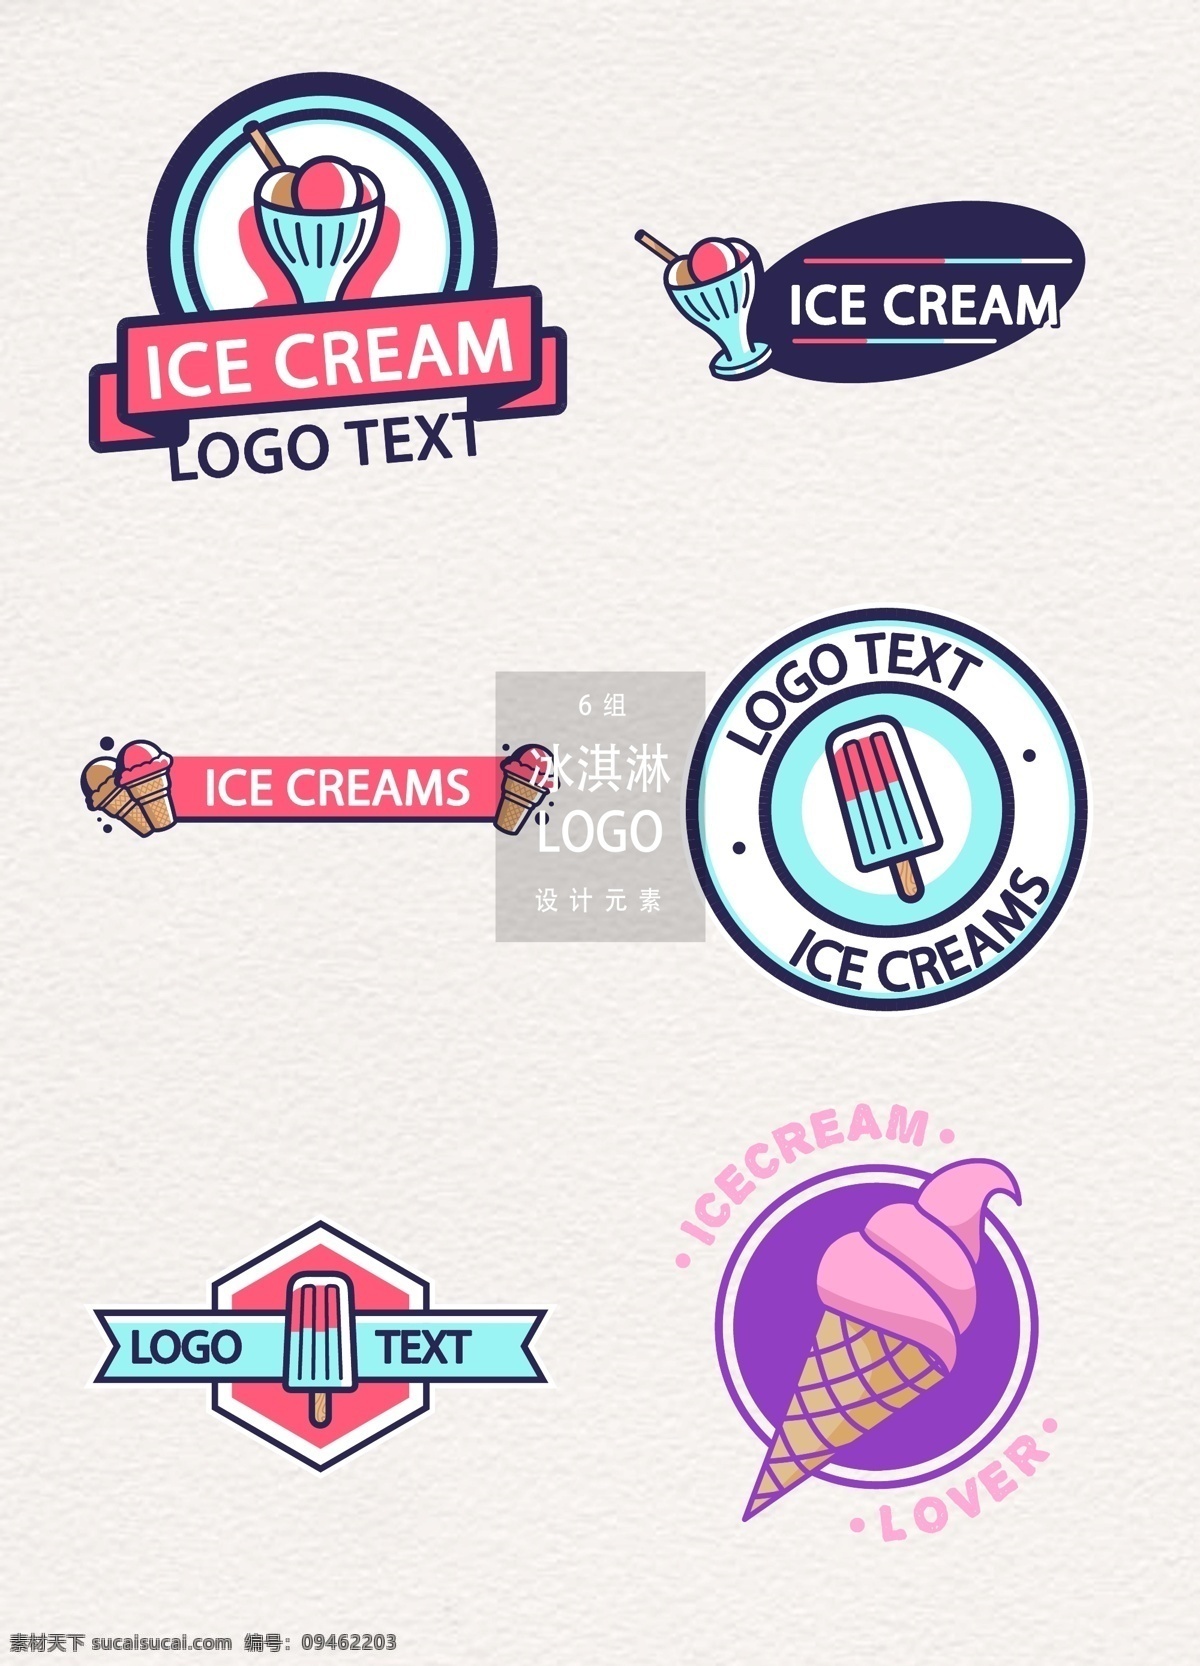 时尚 创意 冰淇淋 店 logo 图标 图标设计 矢量素材 甜品 手绘冰淇淋 冰淇淋图标 甜品logo